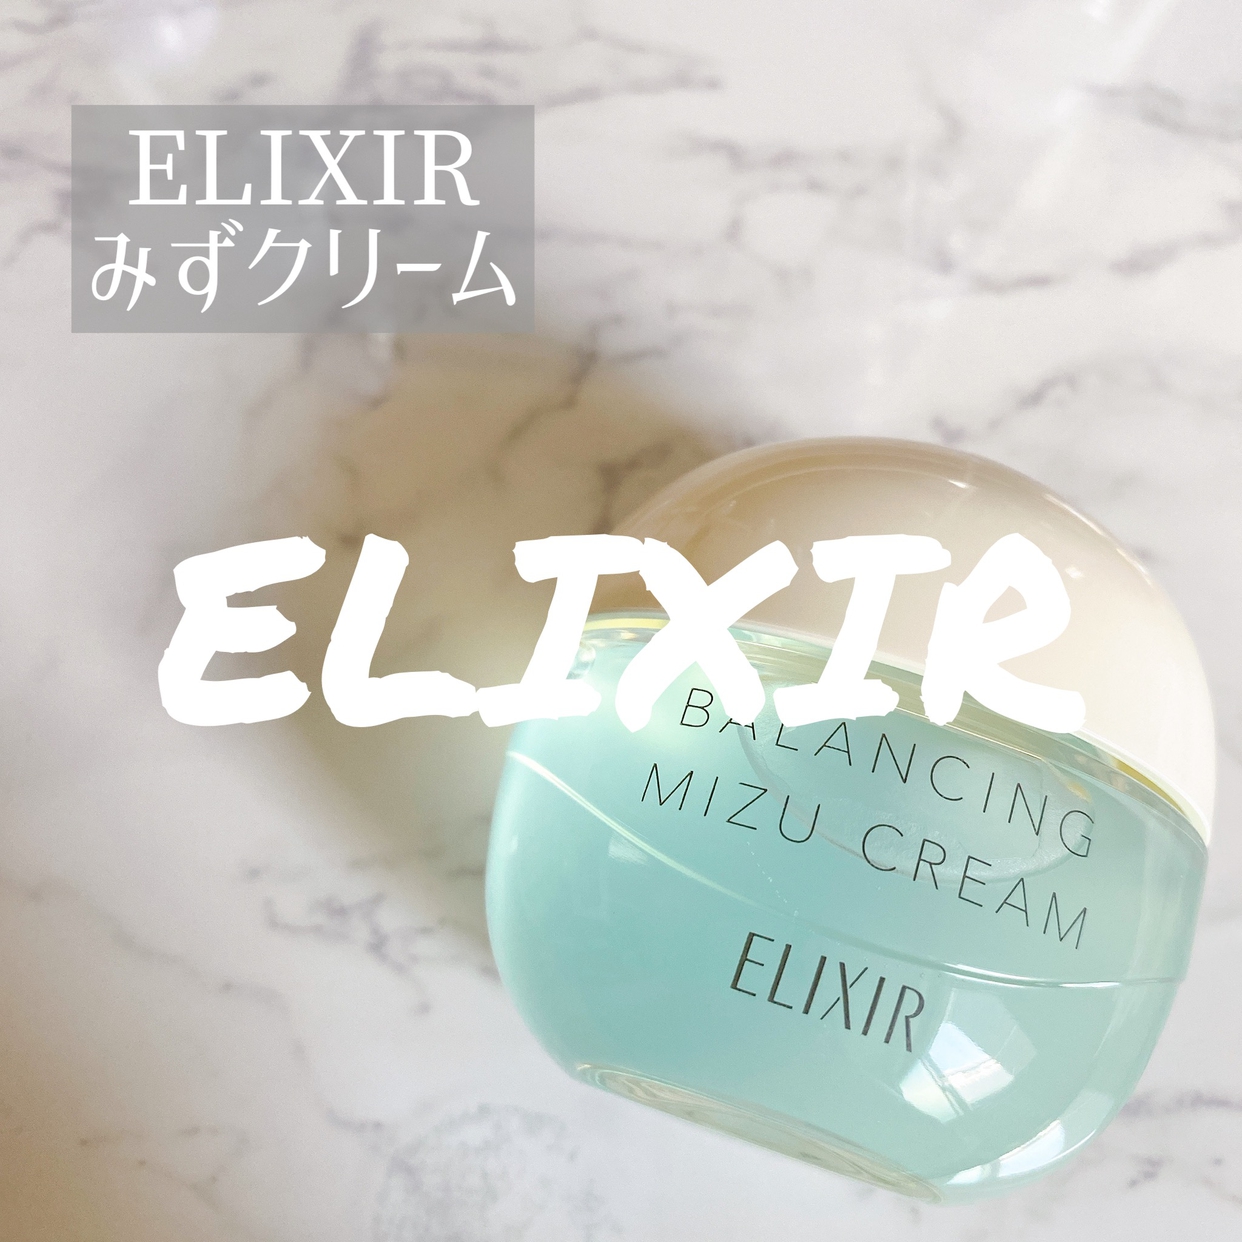 ELIXIR(エリクシール) ルフレ バランシング みずクリームの良い点・メリットに関するmimimi.beautyさんの口コミ画像1